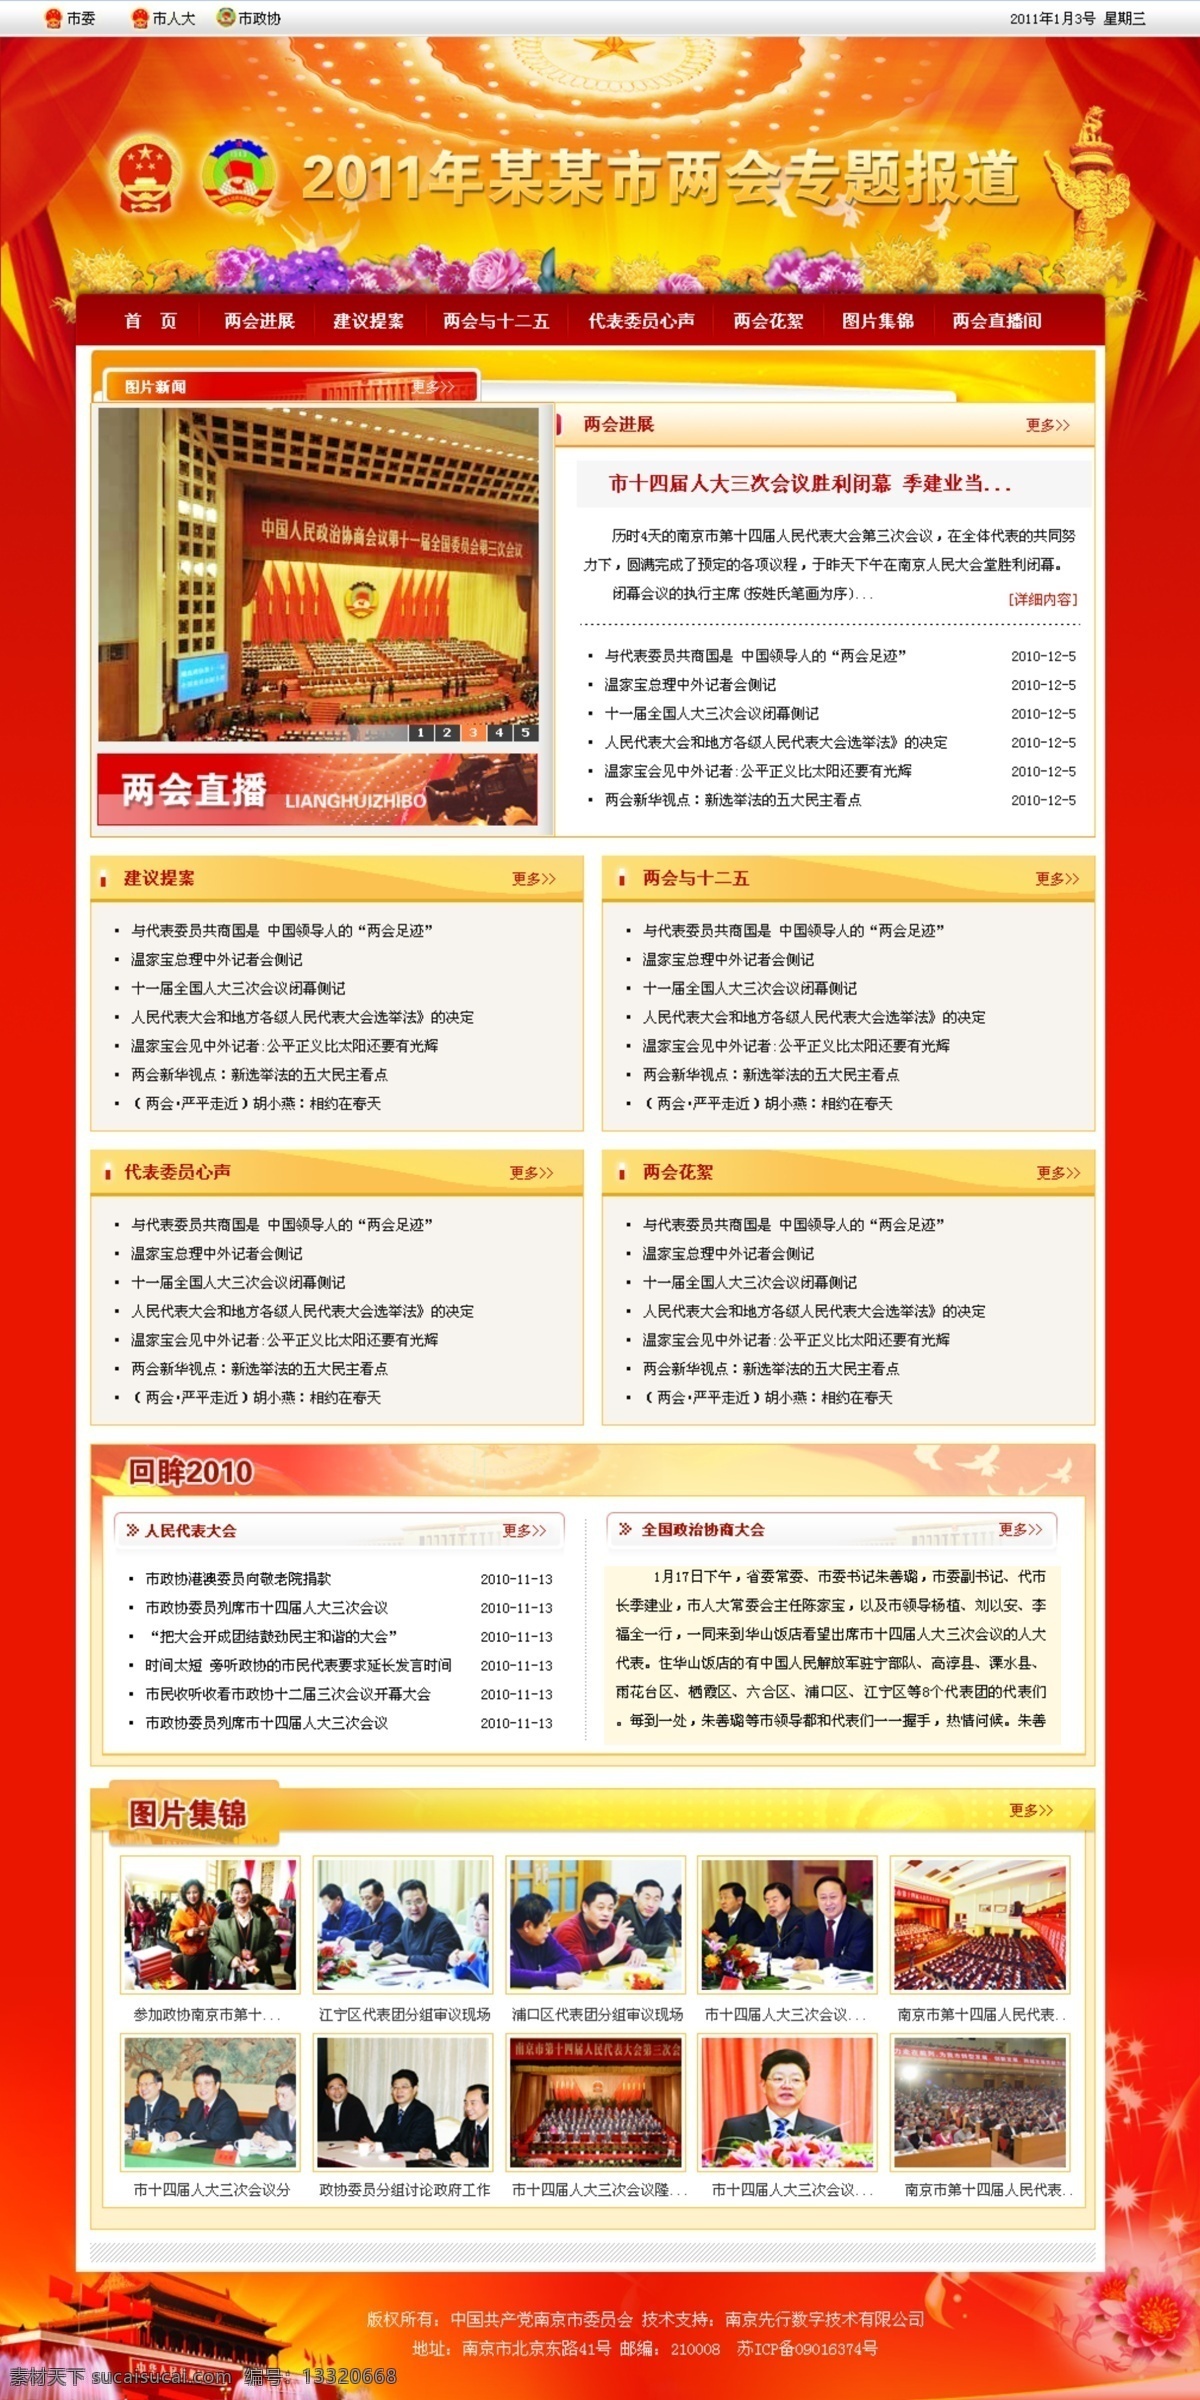 党政机关 两会 专题 网页 党政 网页模板 源文件 中文模版 网页素材